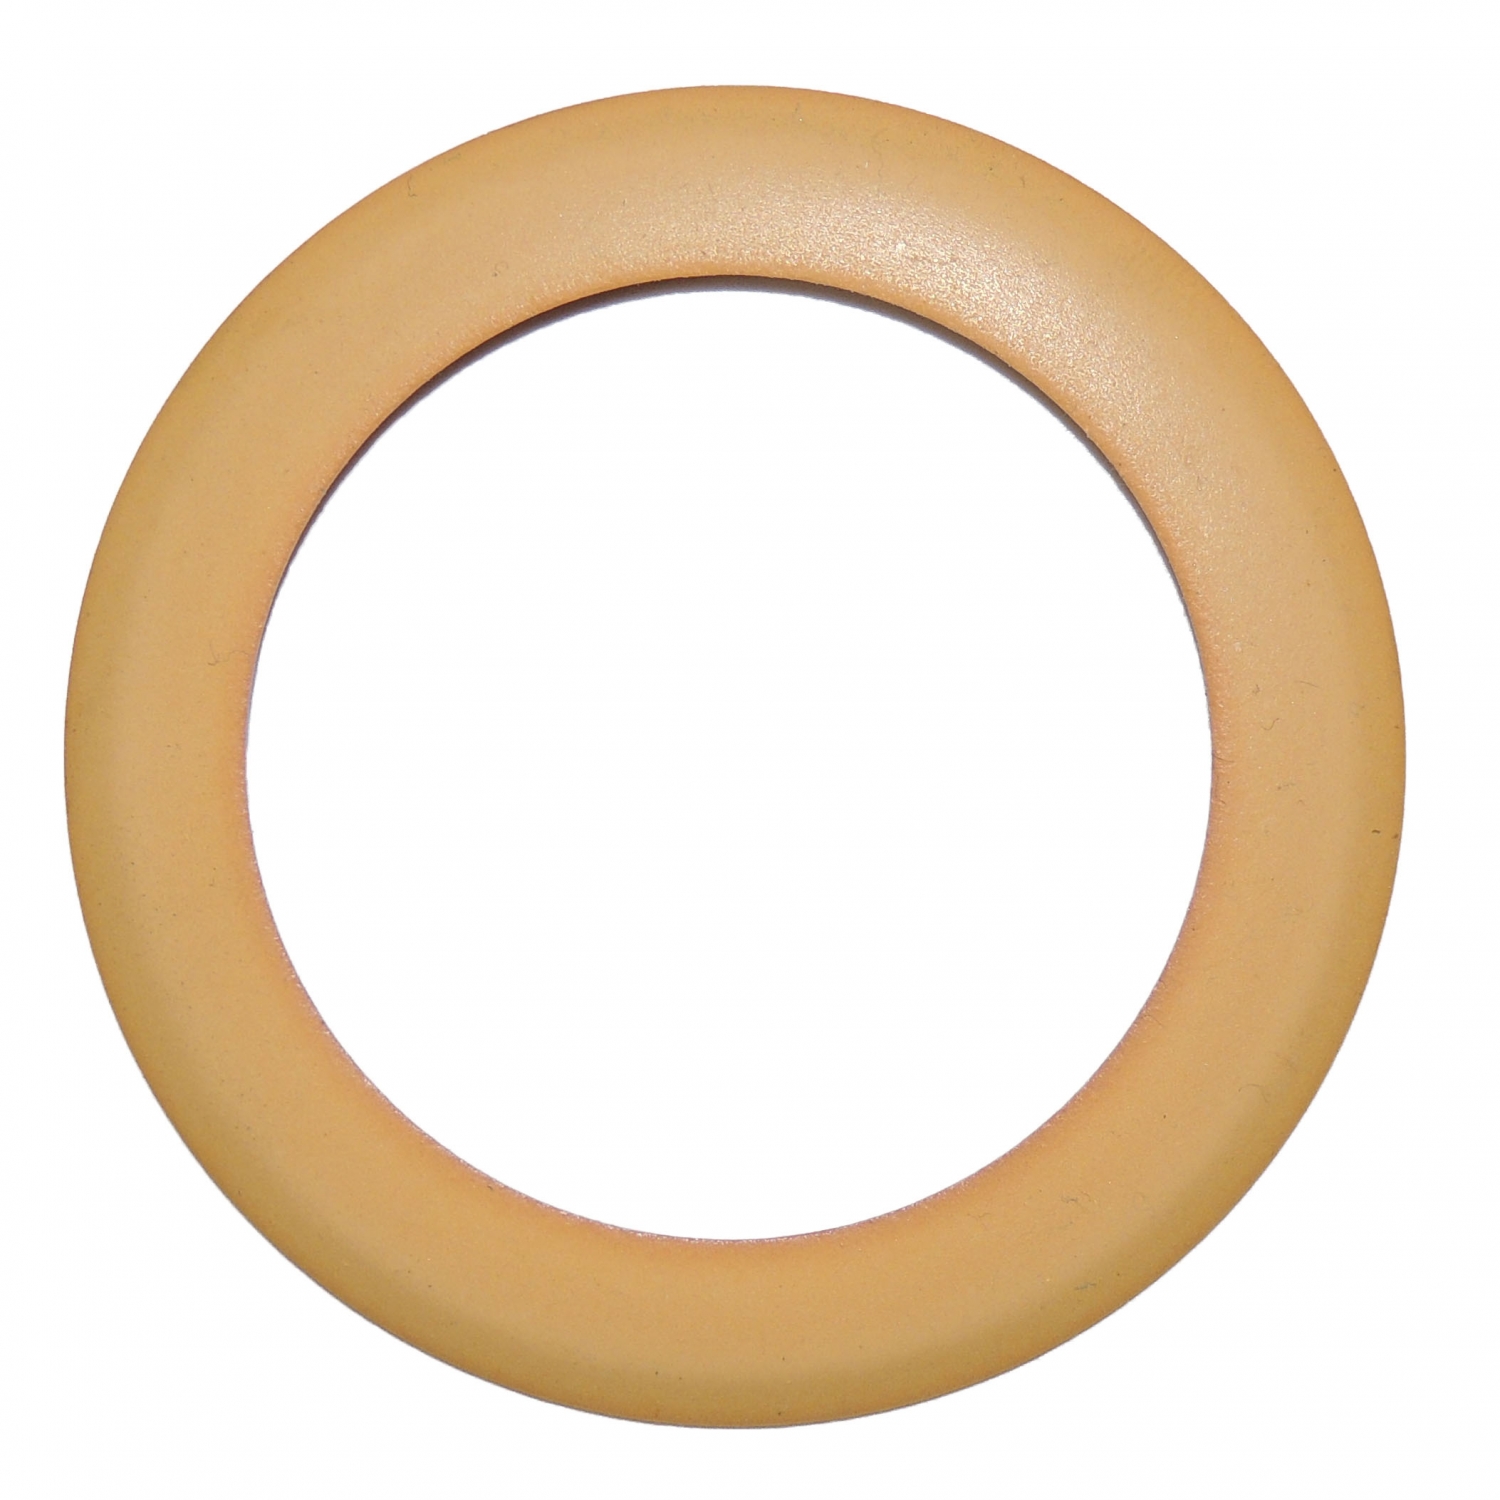 Поршневое кольцо NORDBERG для безмаслянной головки 400 л/мин